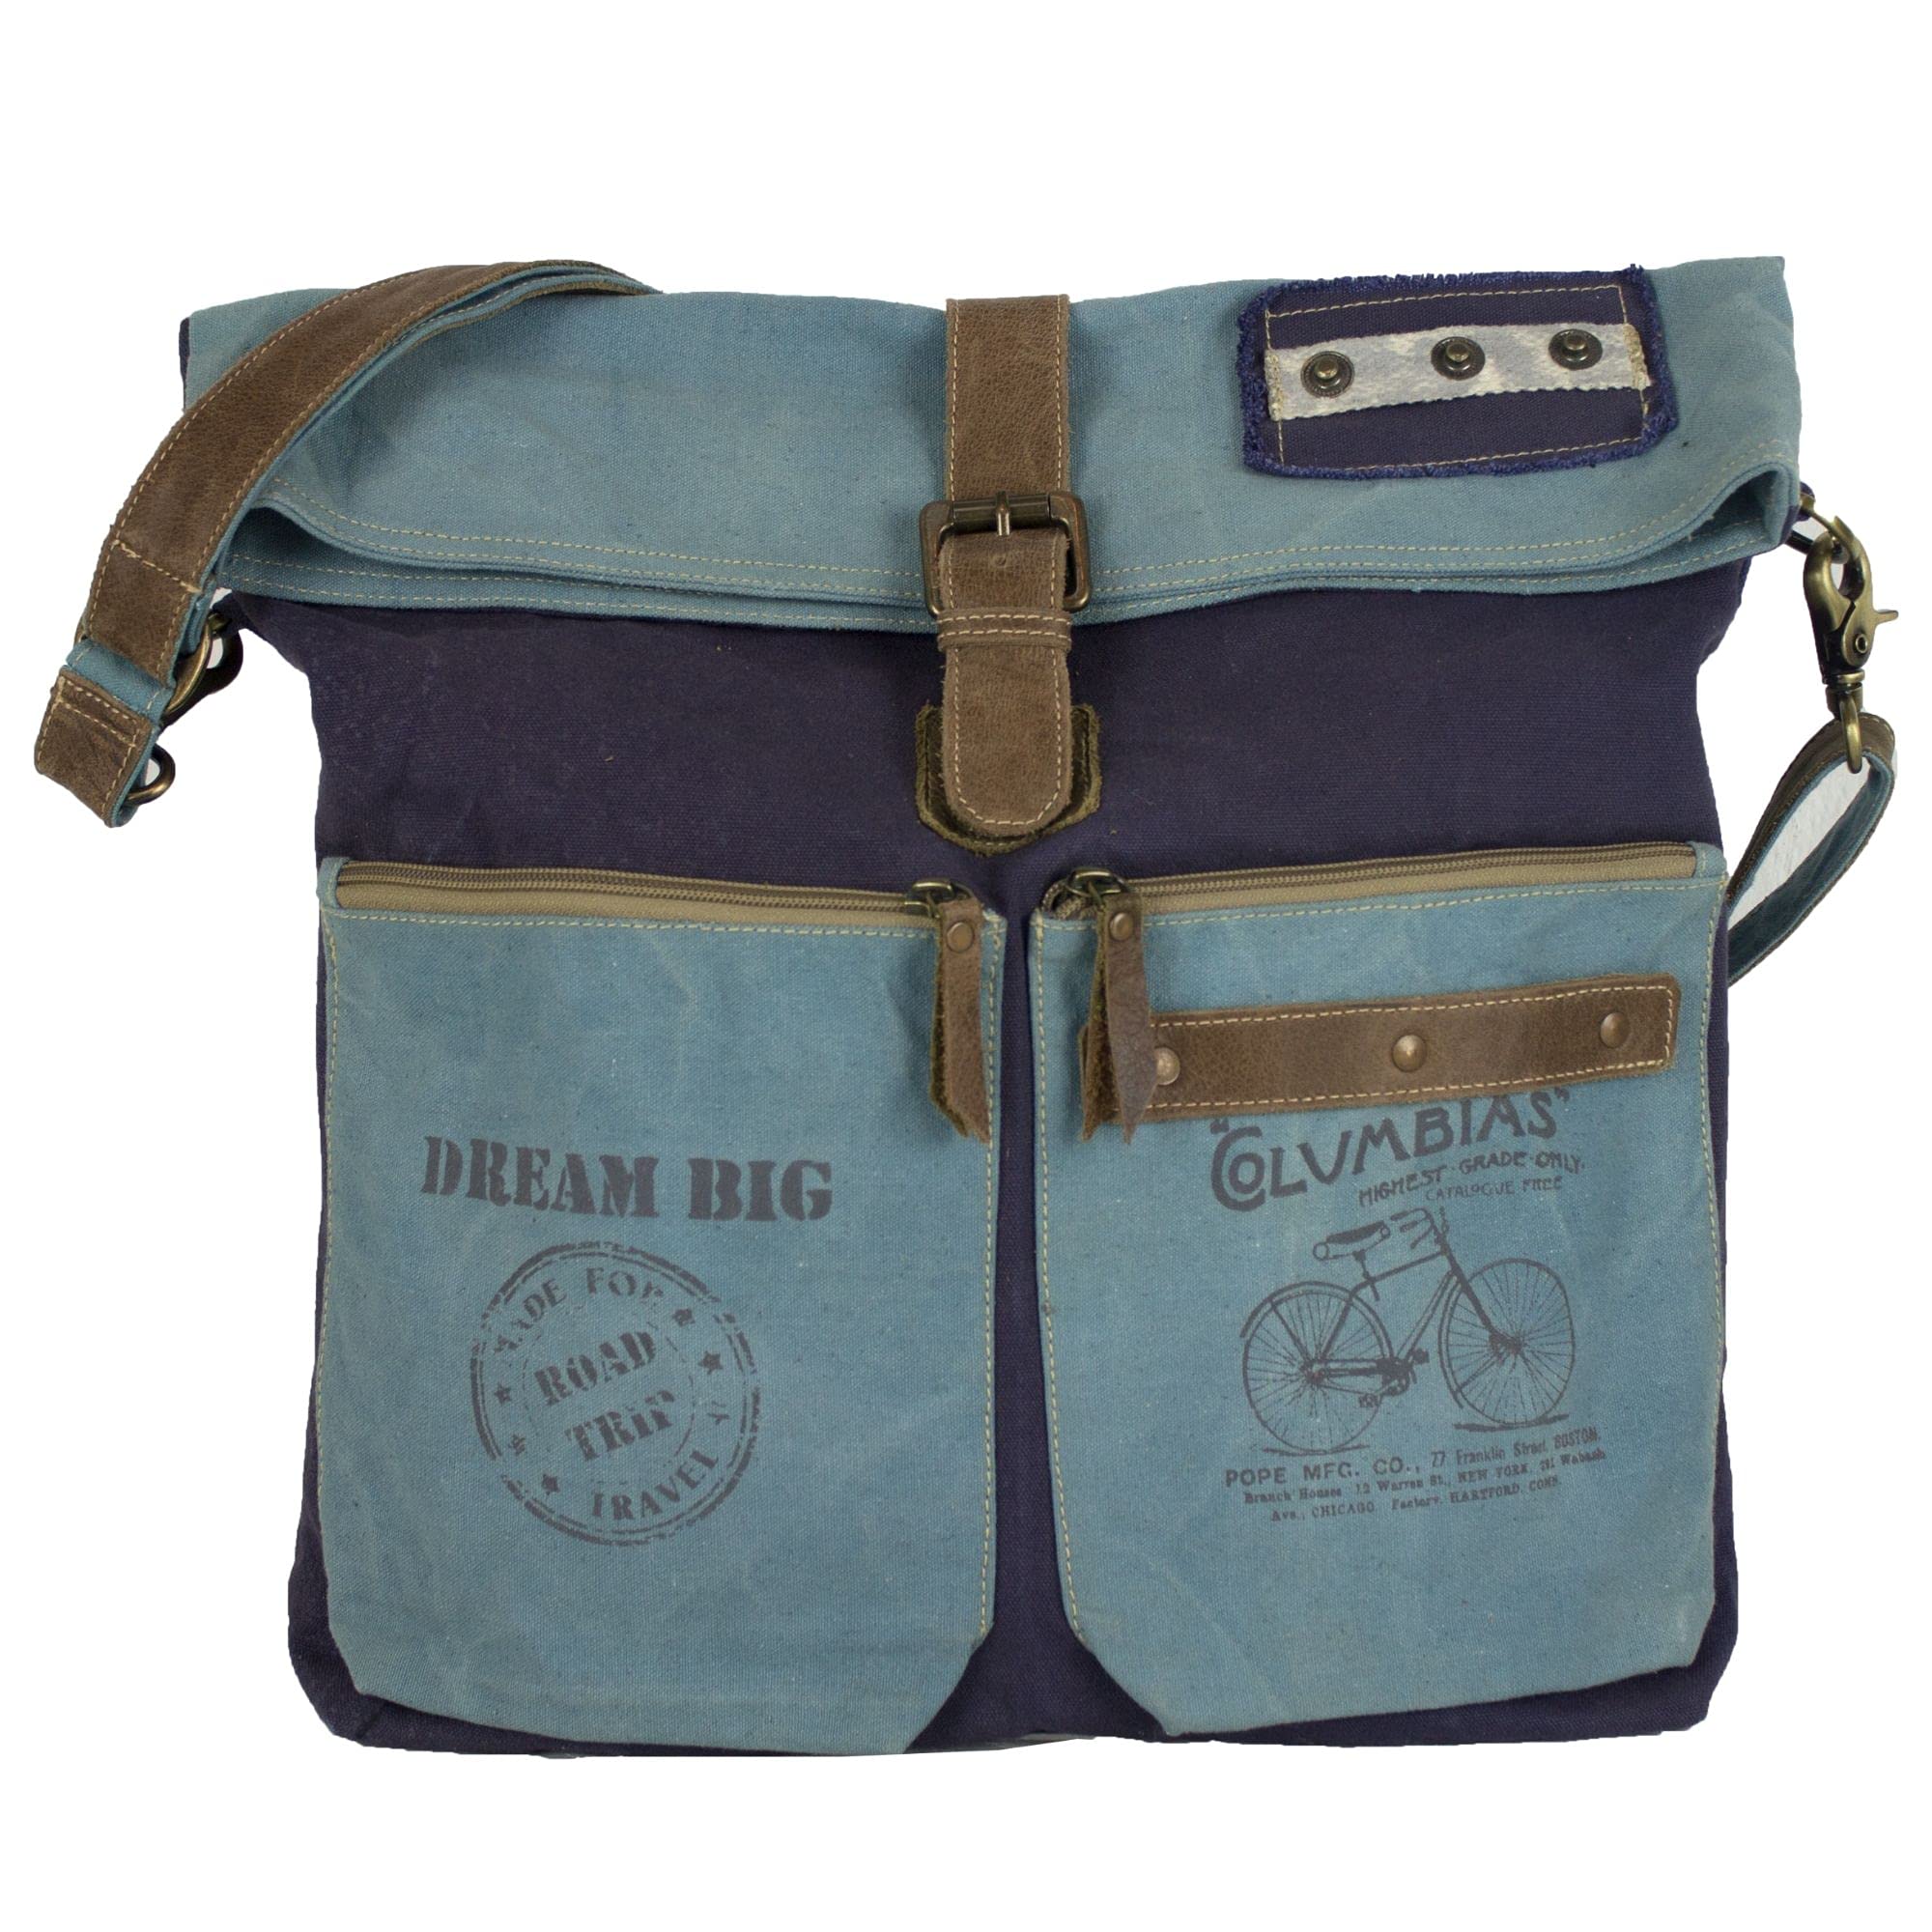 Sunsa große Damen Umhängetasche. Canvas Crossbody/Crossover Bag auch Schultertasche. Blaue Damentasche in Retro Vintage Design. Geschenke für Frauen